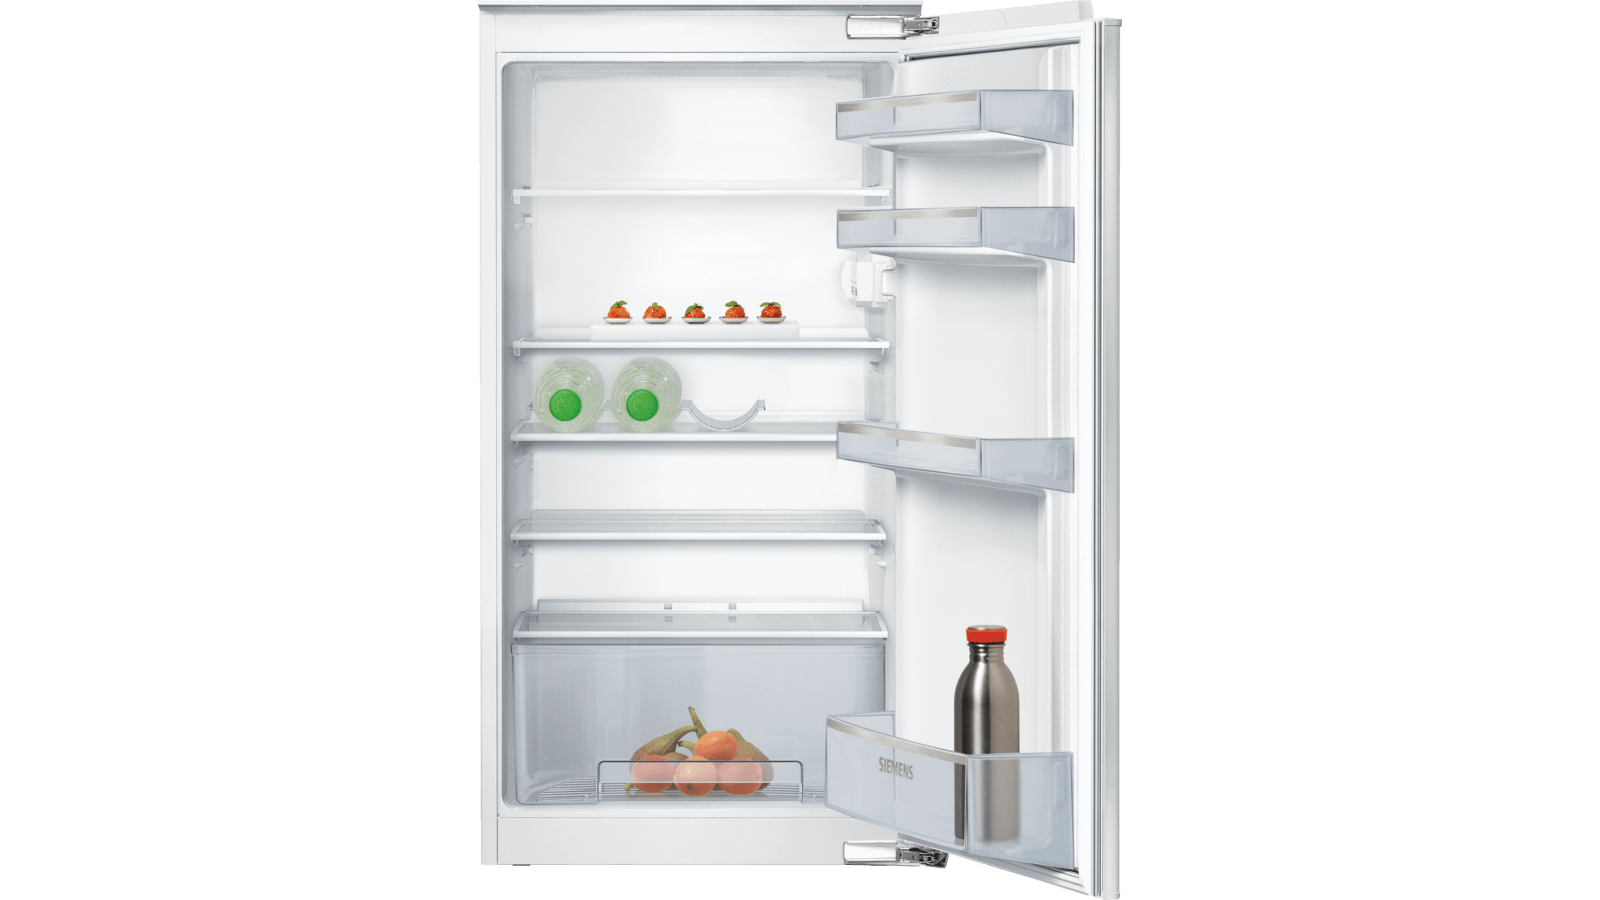 Appal Madison Aanpassing KI20RNFF1 Inbouw koelkast | SIEMENS NL